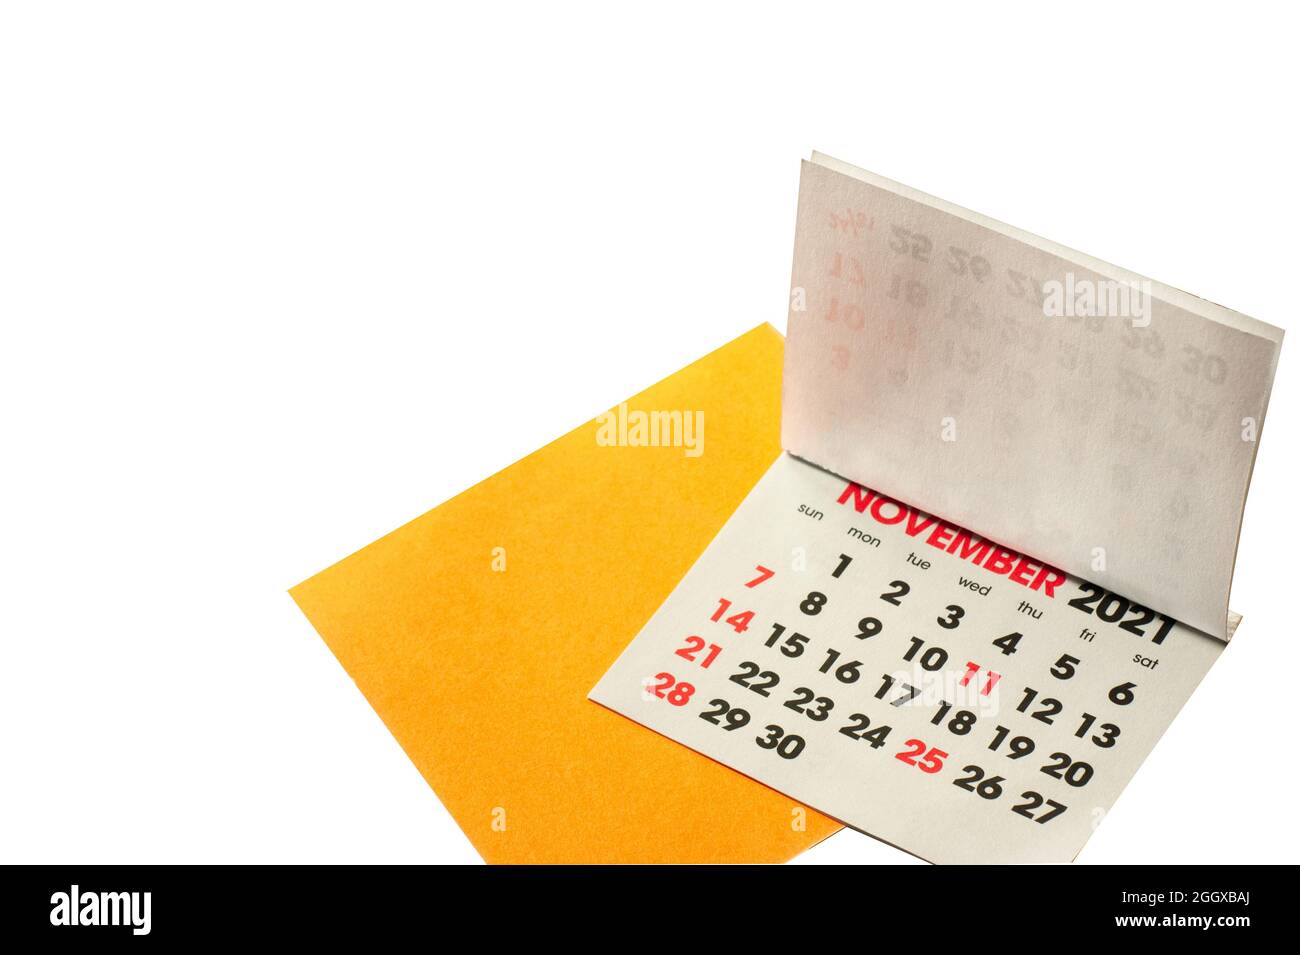 November 2021 Kalender mit gelbem Erinnerungsnotepapier isoliert. Die Kalenderseiten werden nach vorne gedreht, um den November in Rot zu betonen. Stockfoto